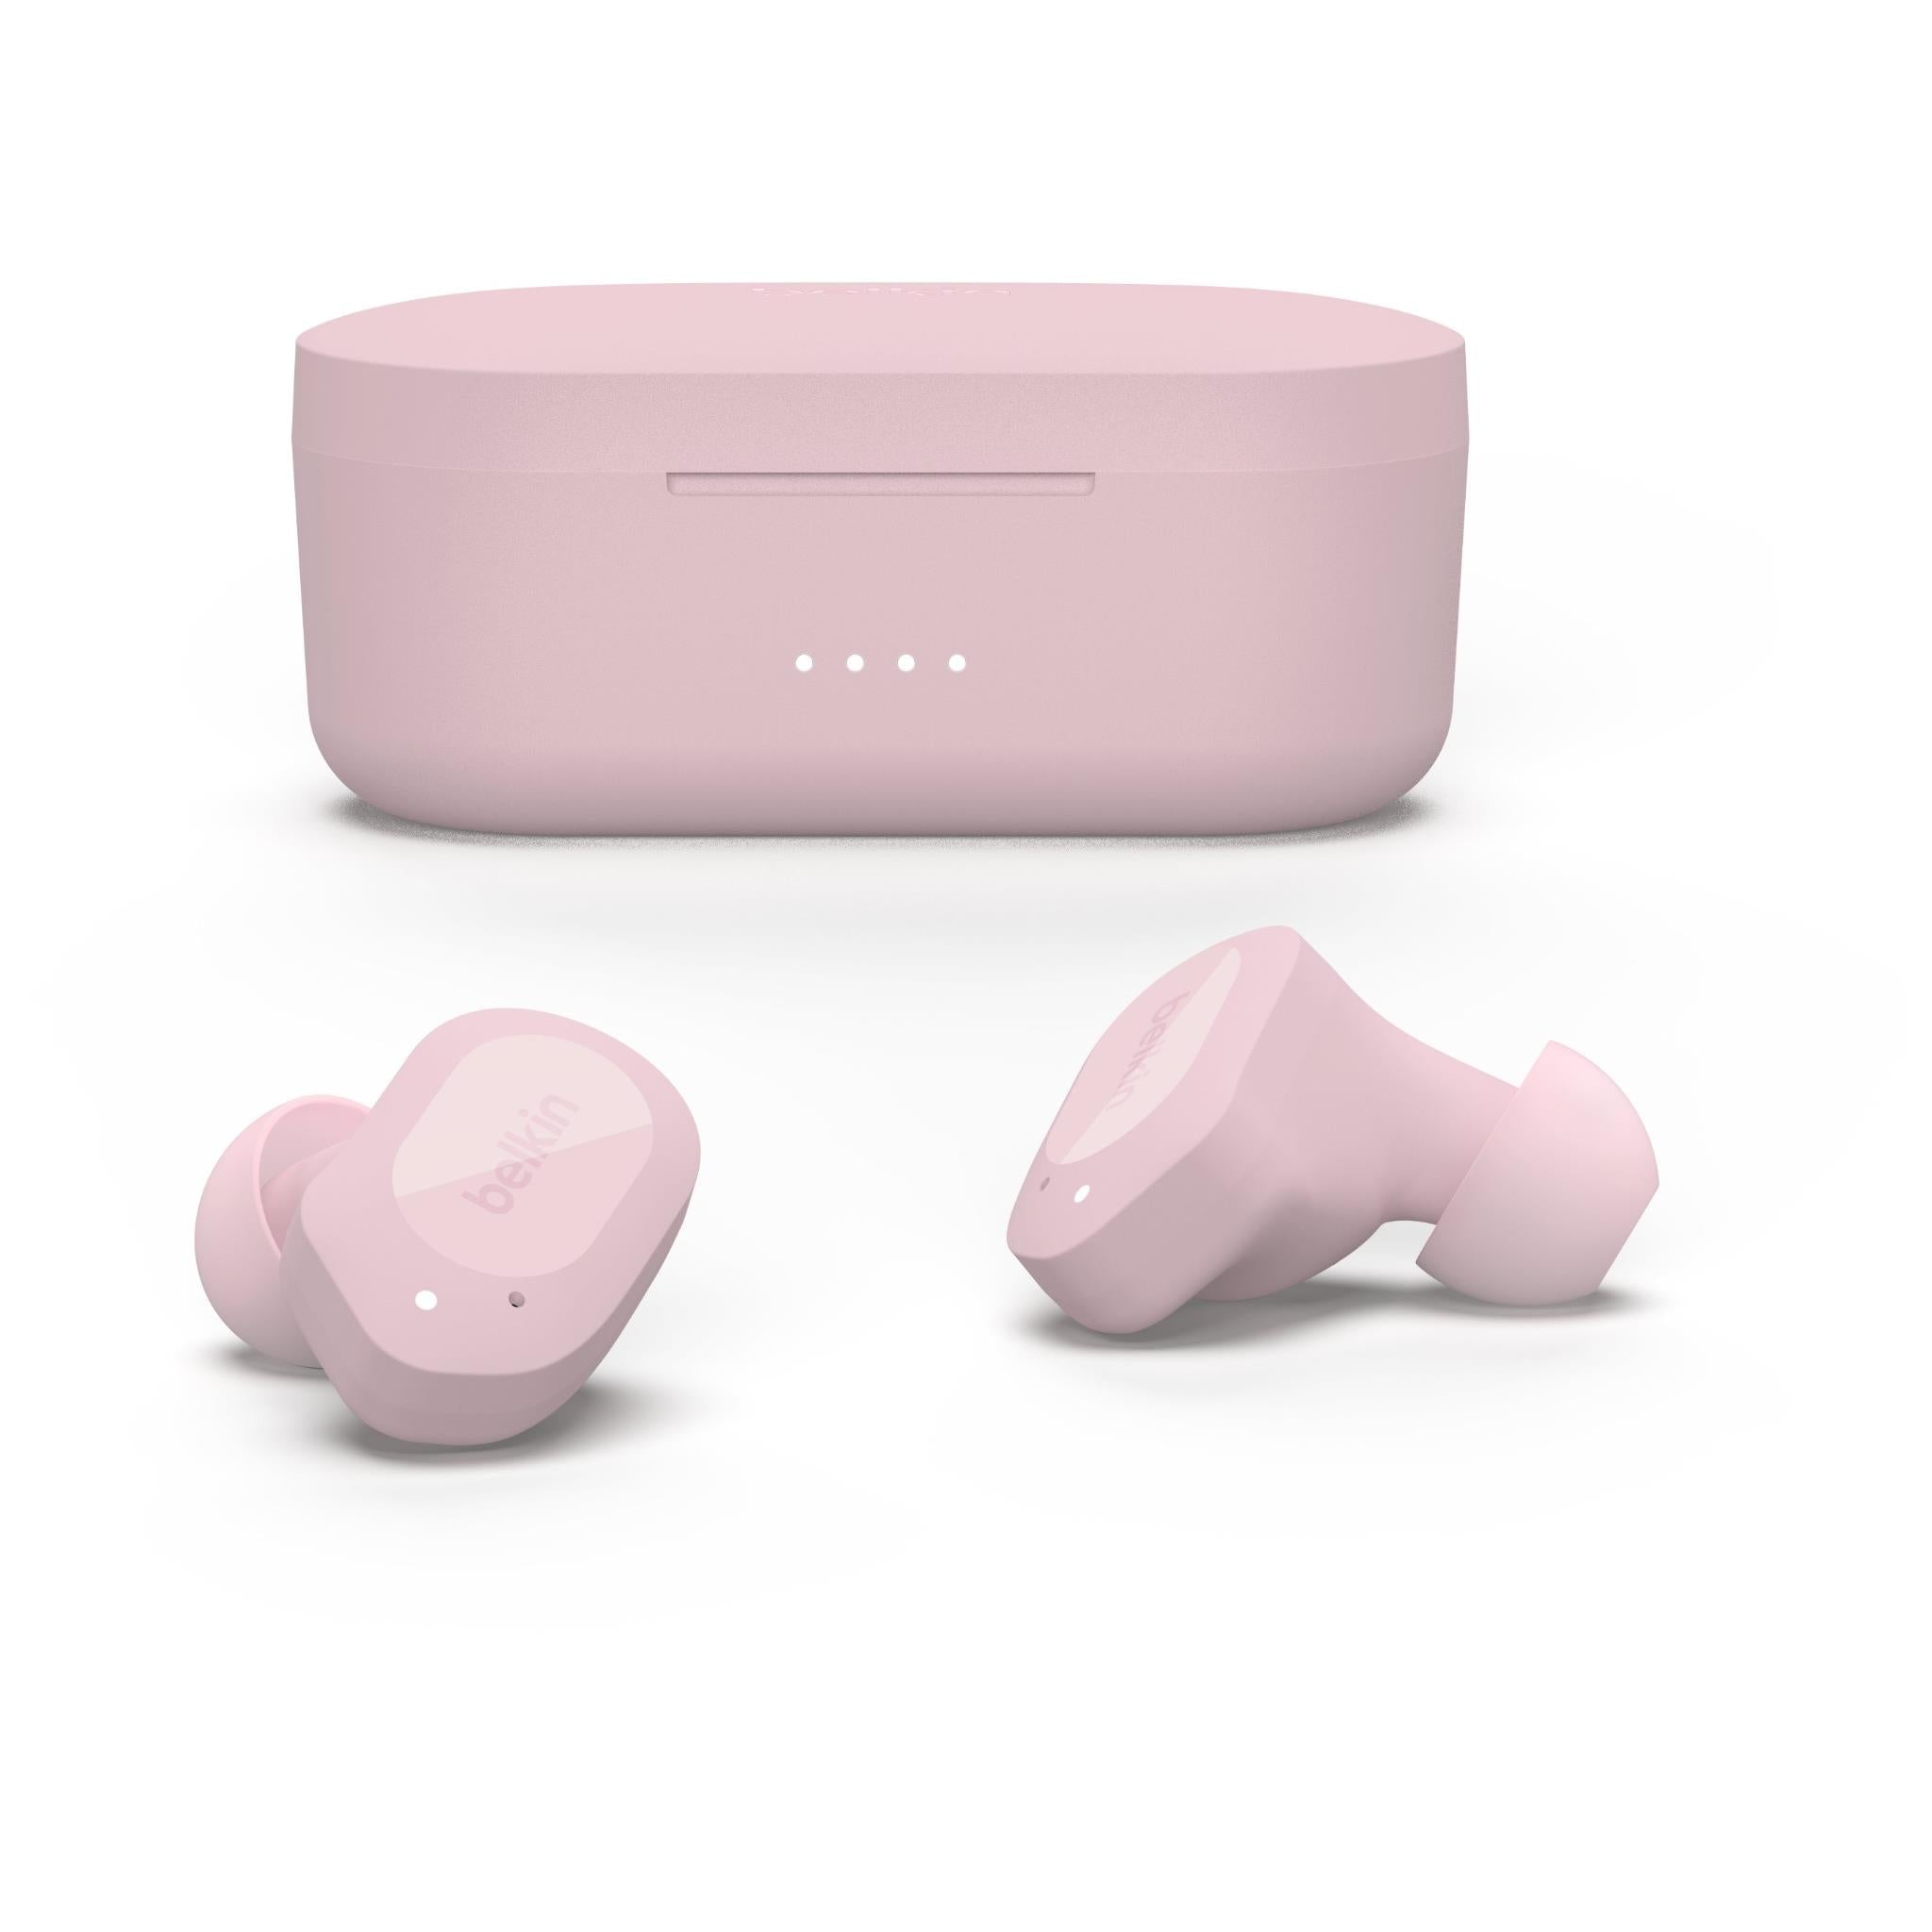 belkin soundform play true wireless in-ear headphones (pink)